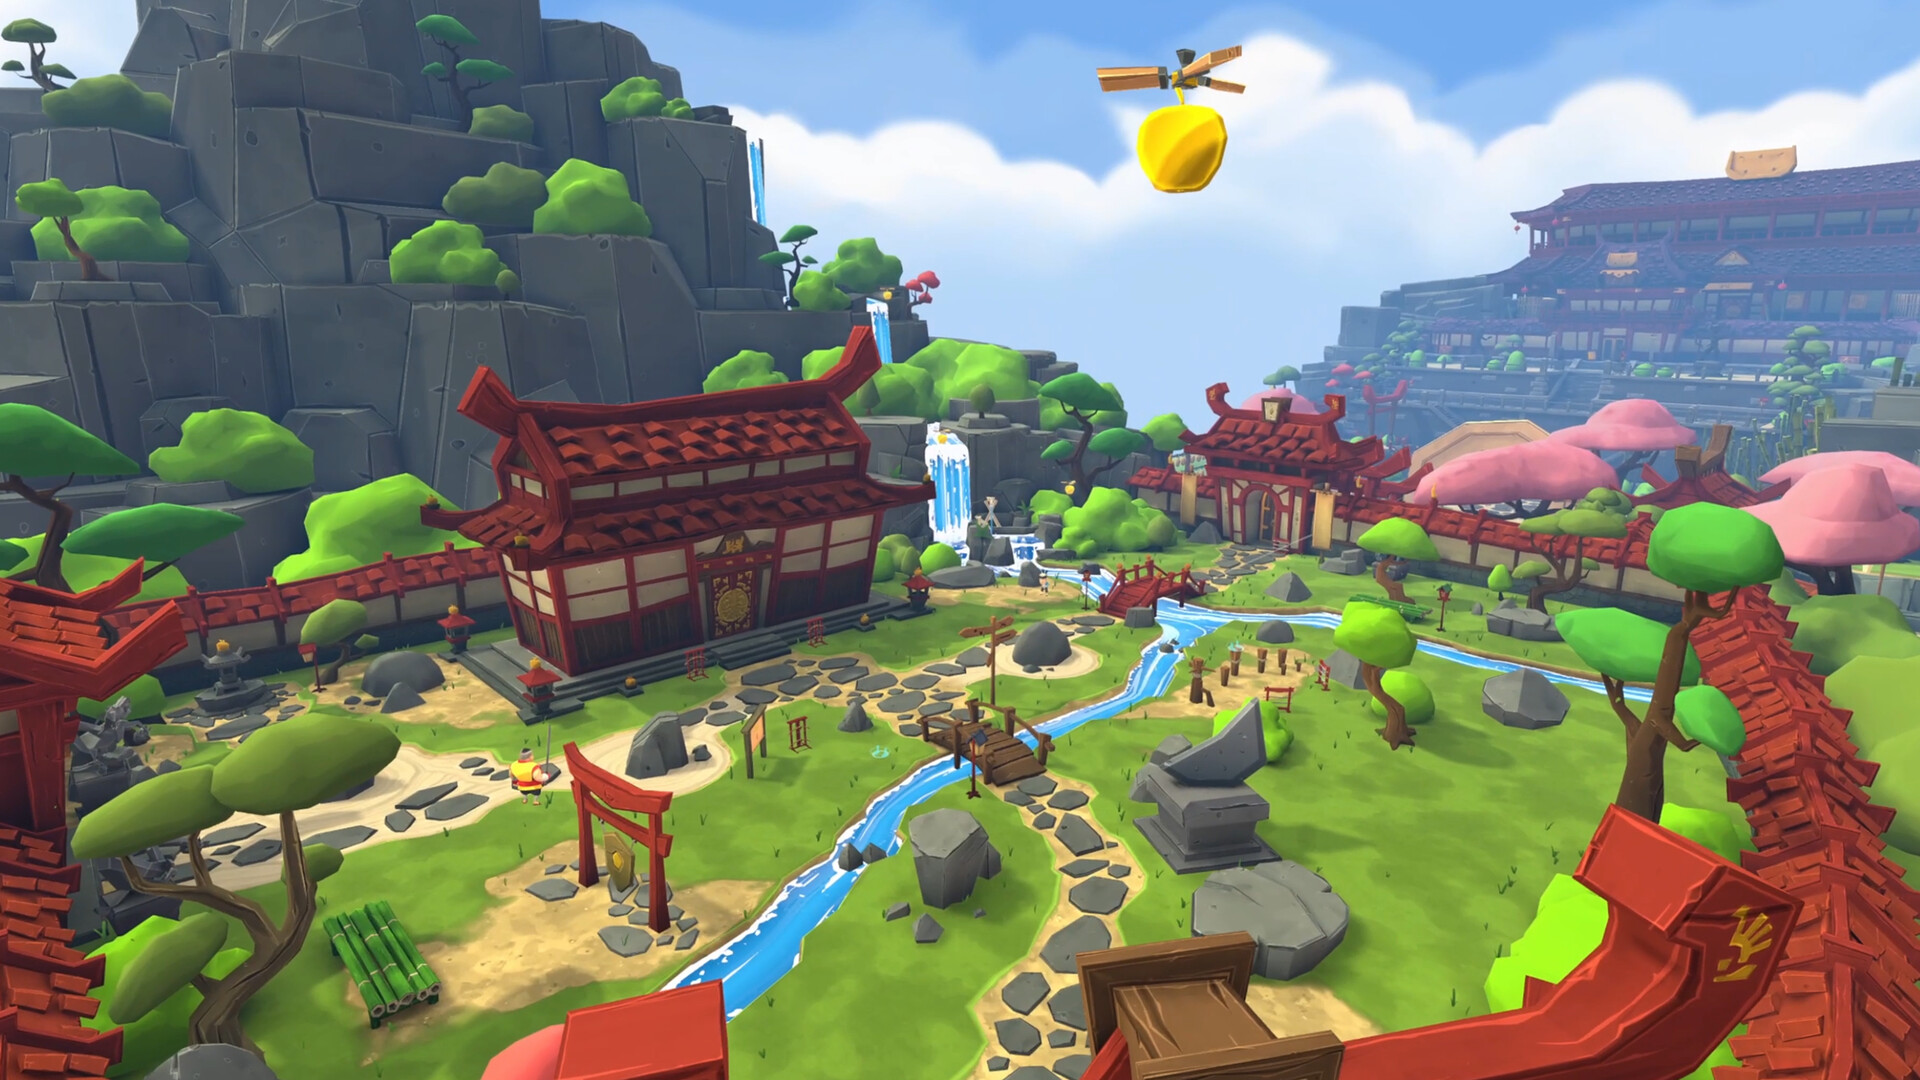 Save 40% on Fruit Ninja VR on Steam